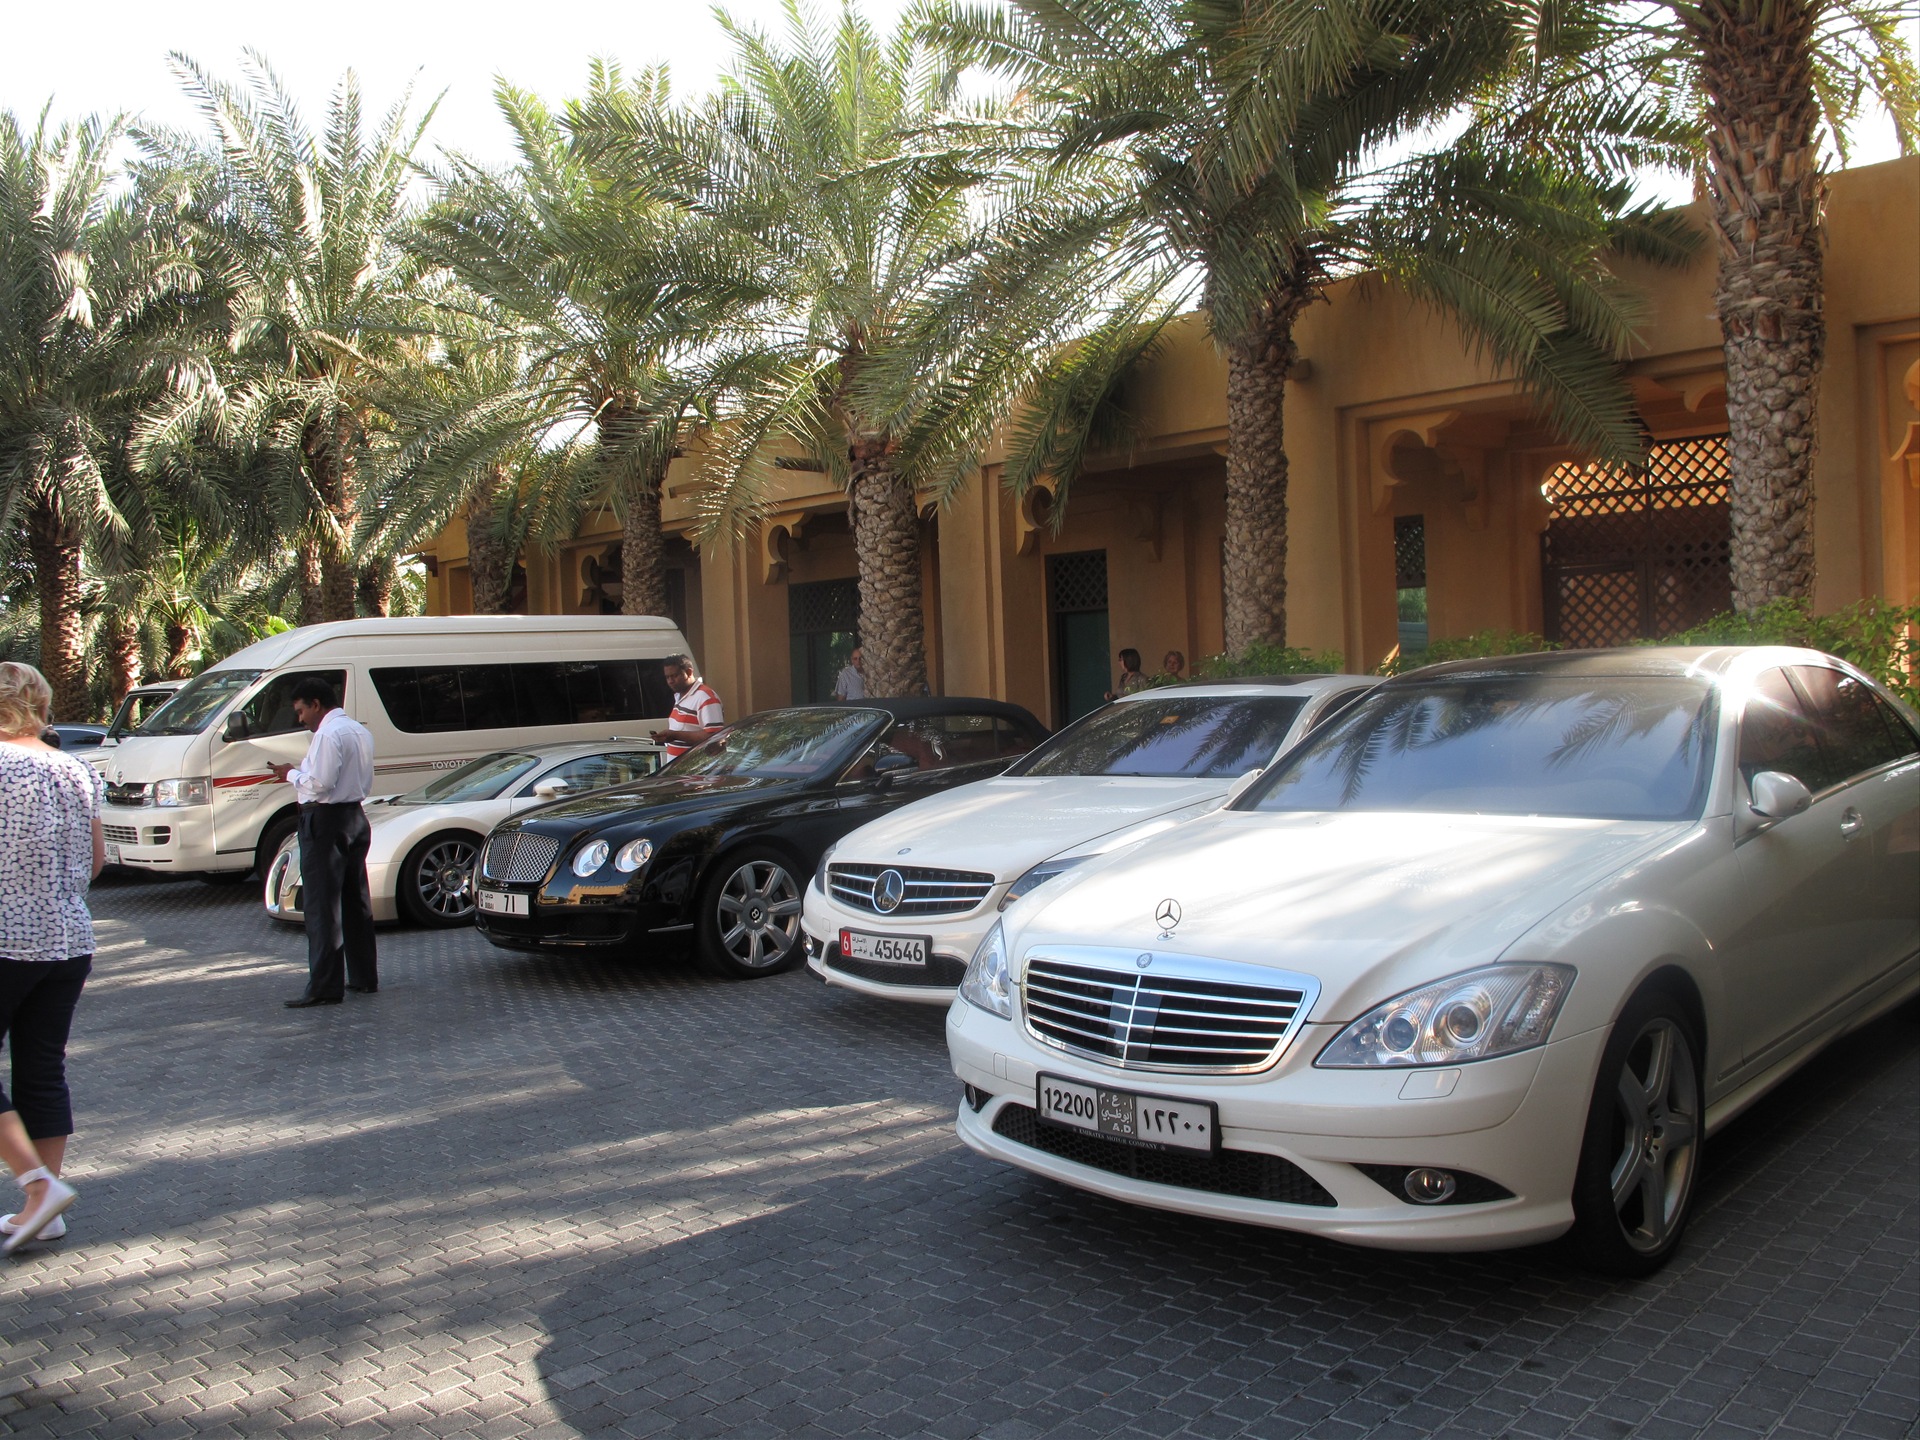 Купить в дубае с доставкой. Арабские машины. Дубай машины. Арабские эмираты автомобили. Автомобили в Дубае.